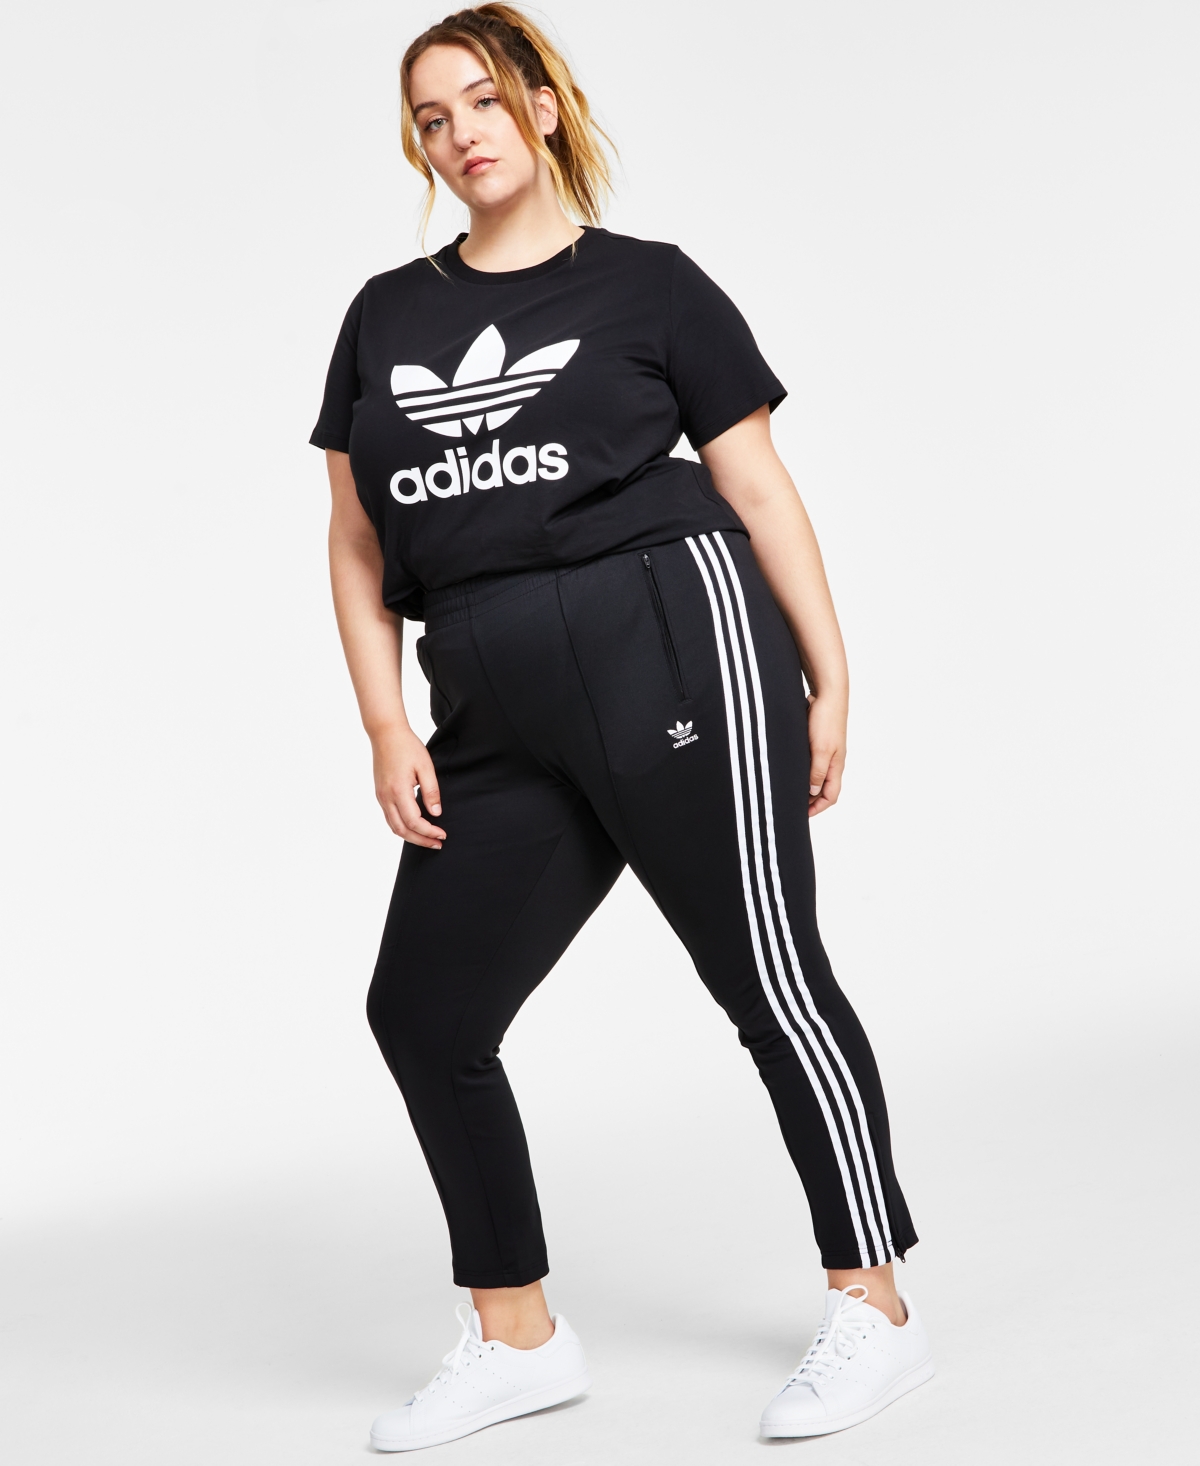 Adidas Originals Originals Plus Size Superstar Full Length Track Pants Primeblue In Black,white